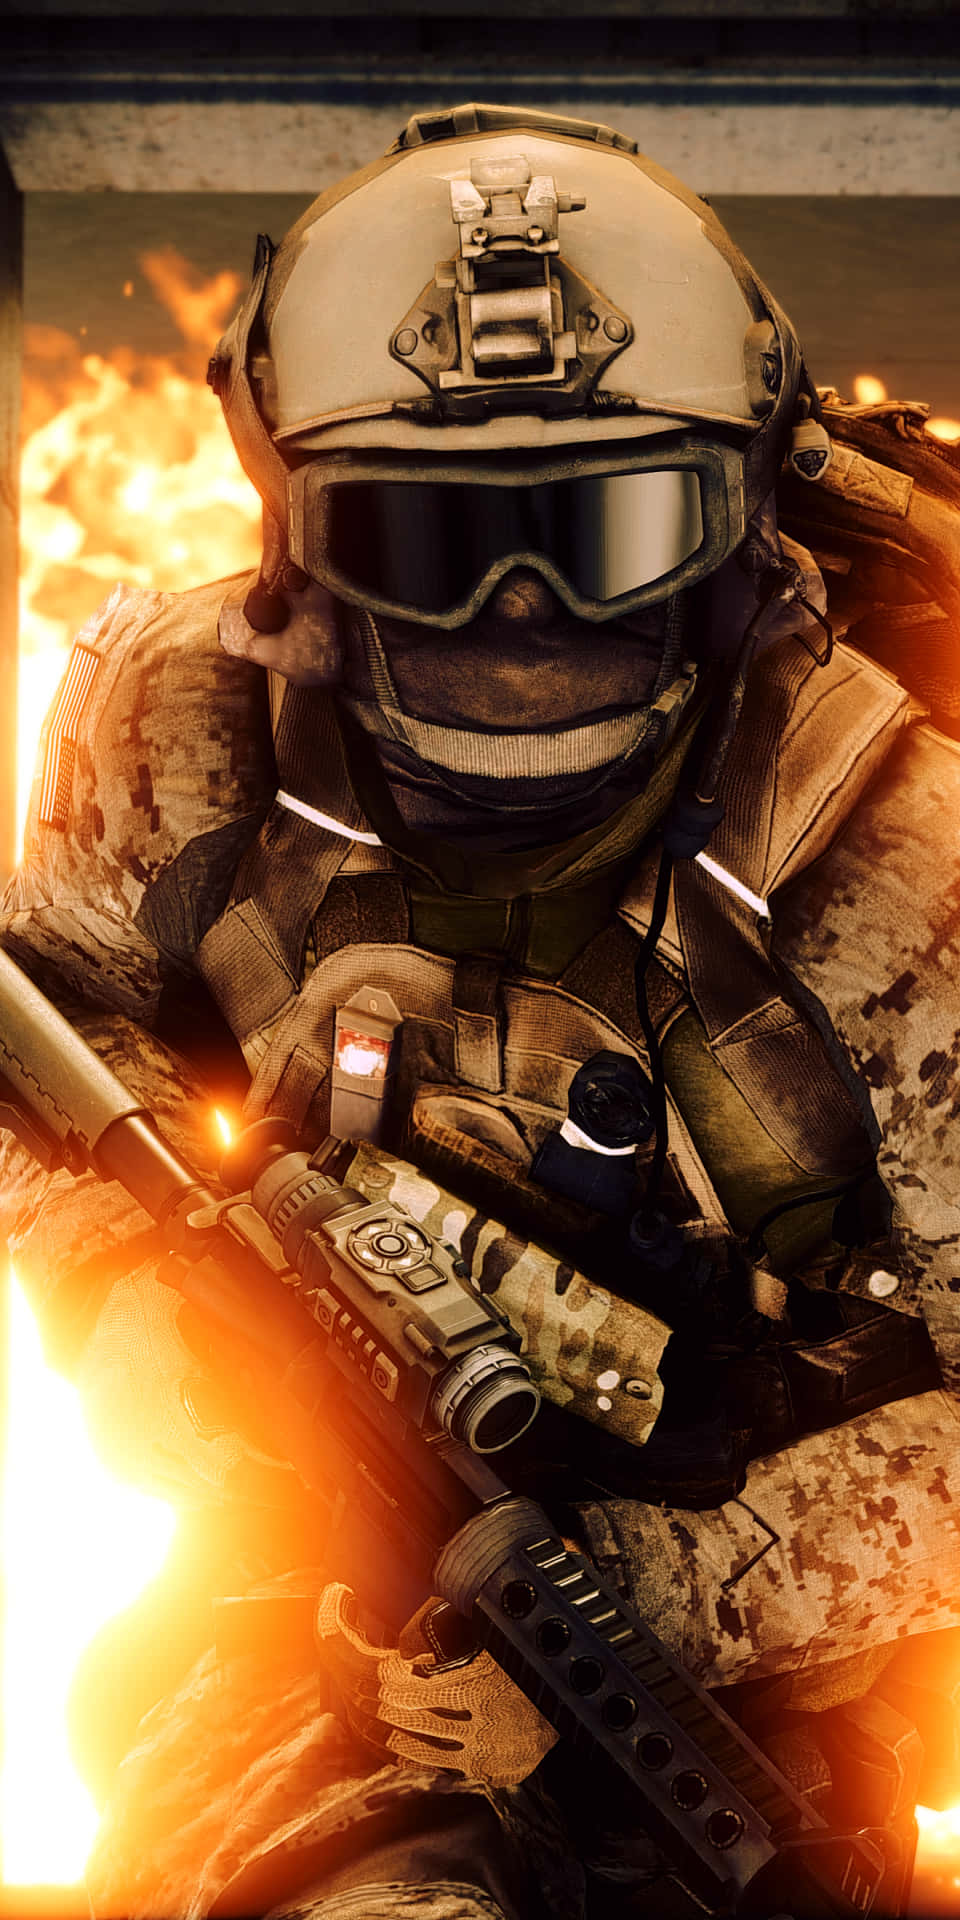 Pixel3 Bakgrundsbild För Battlefield 4 Med Soldat.